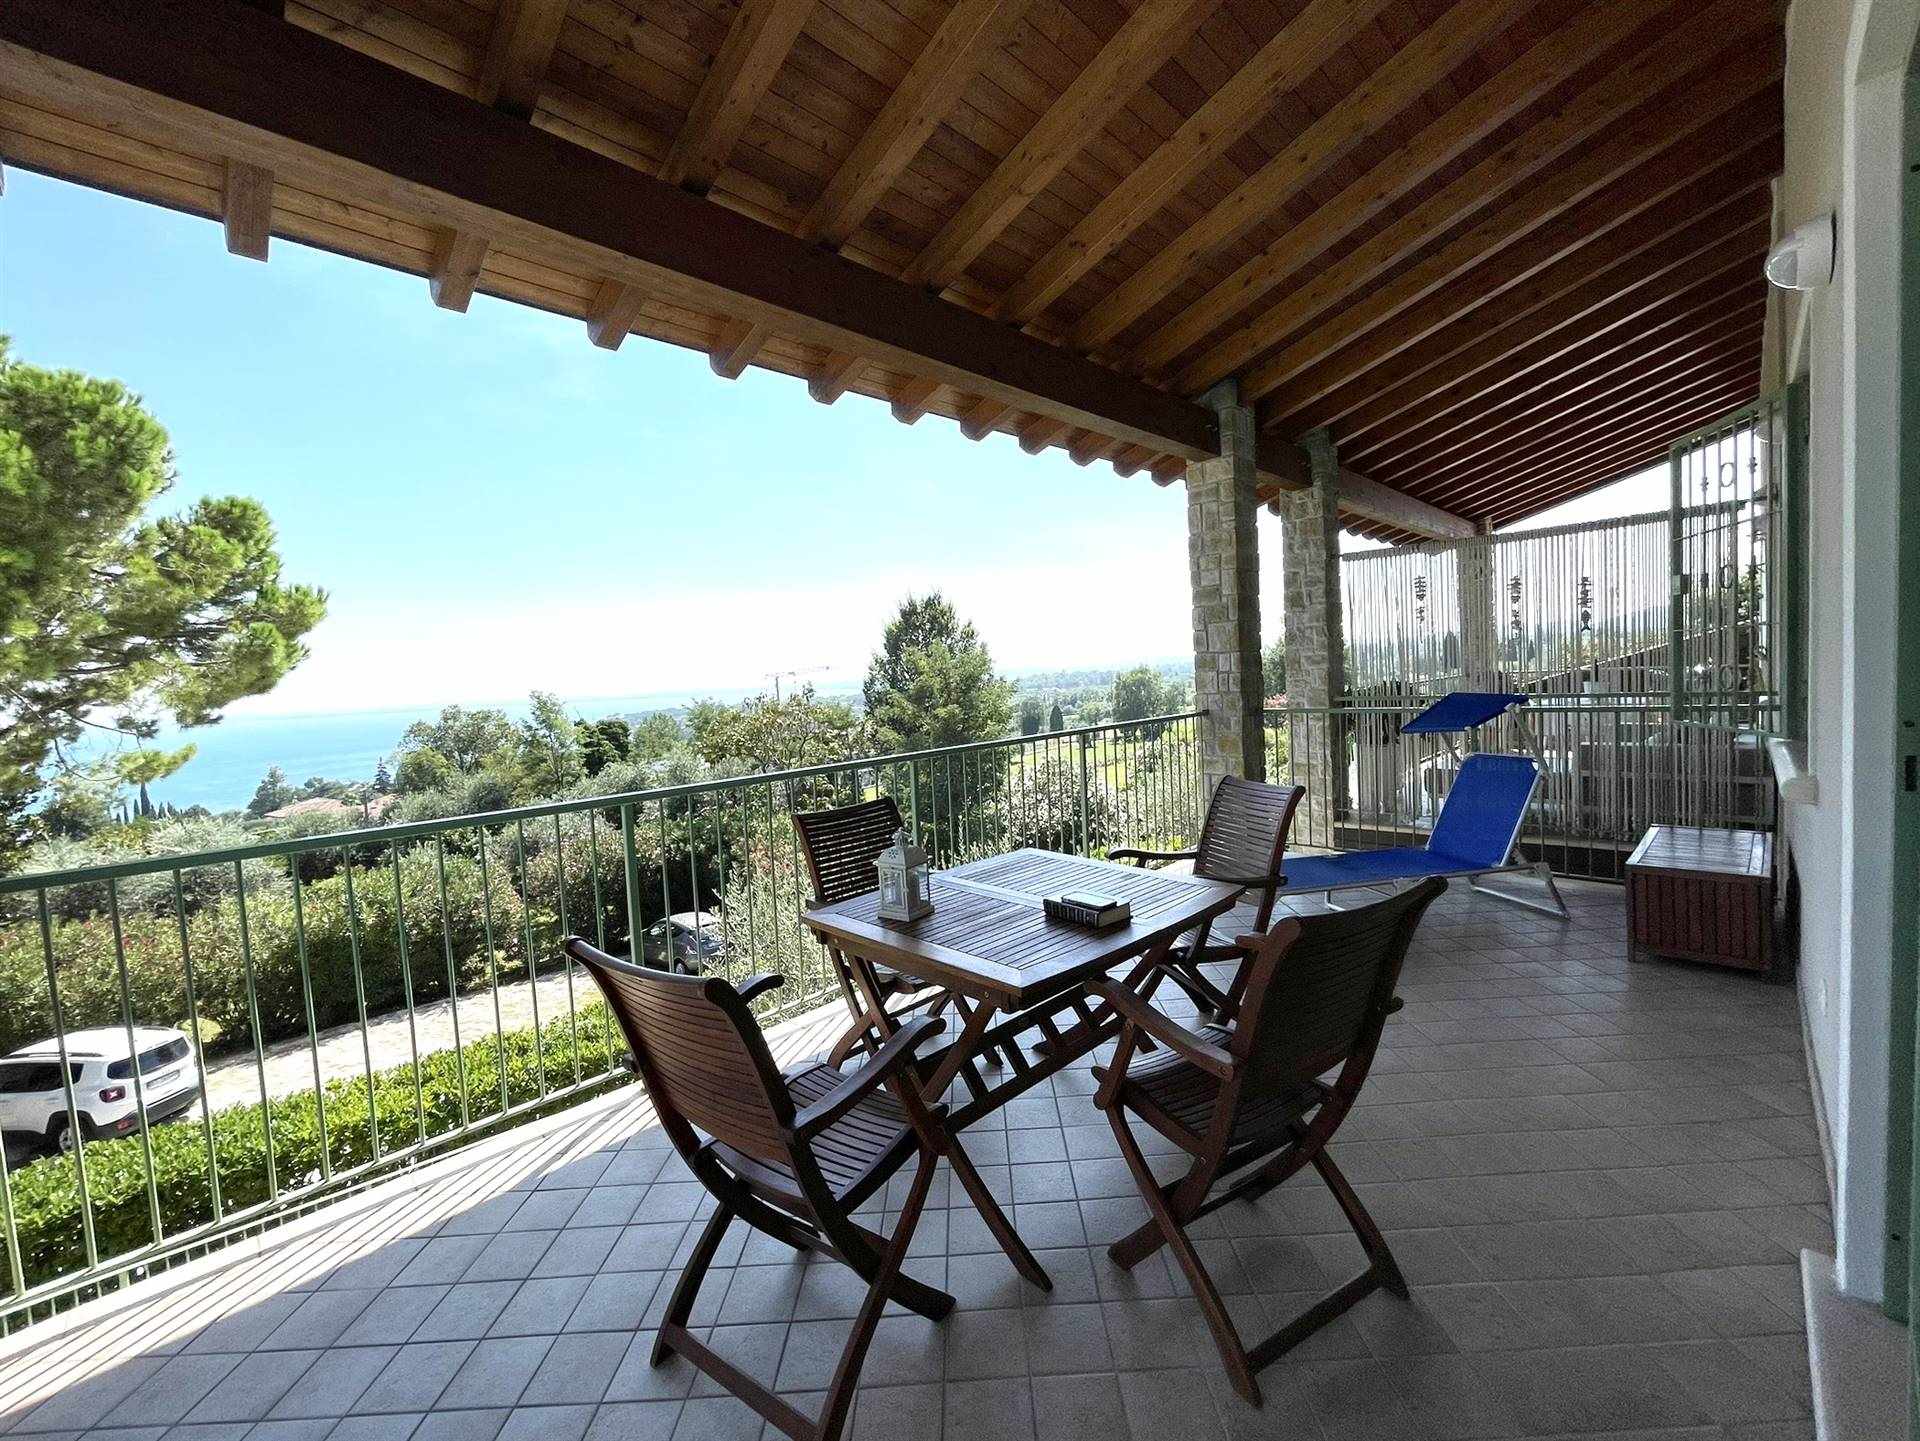 Eccezionale appartamento situato al primo e ultimo piano, con una vista spettacolare sul suggestivo lago di Garda. Il punto focale di questa 